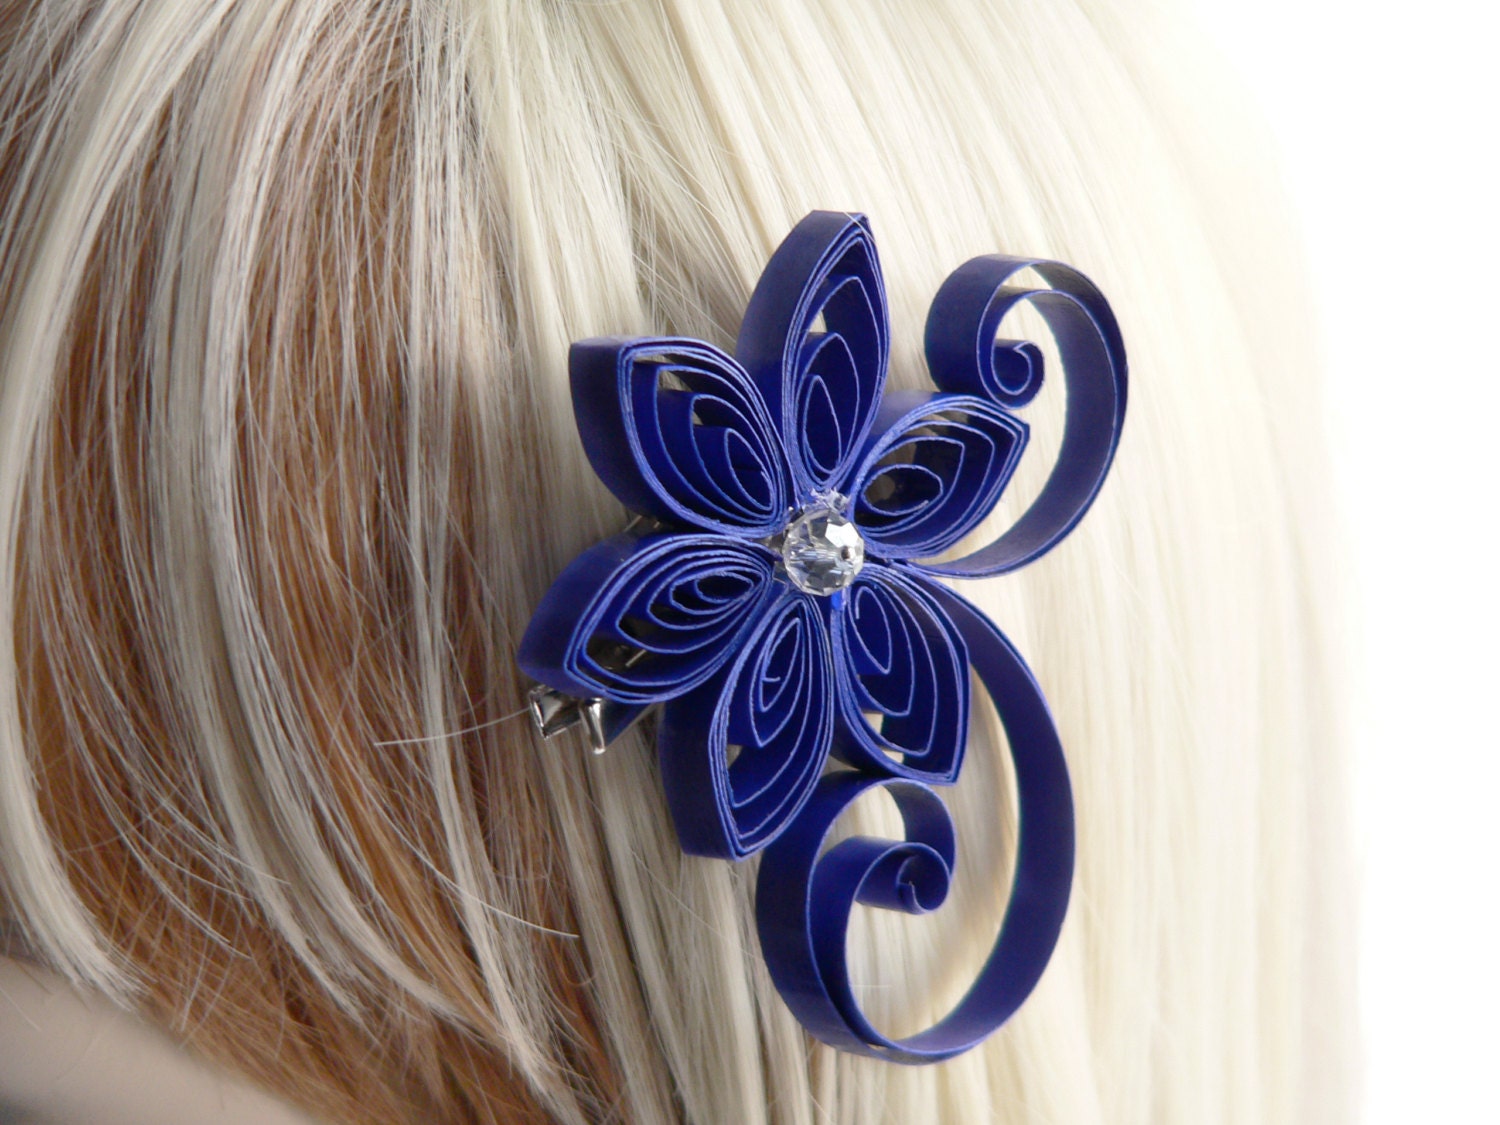 1. Royal Blue Hair Ties - Pack of 10 - wide 5